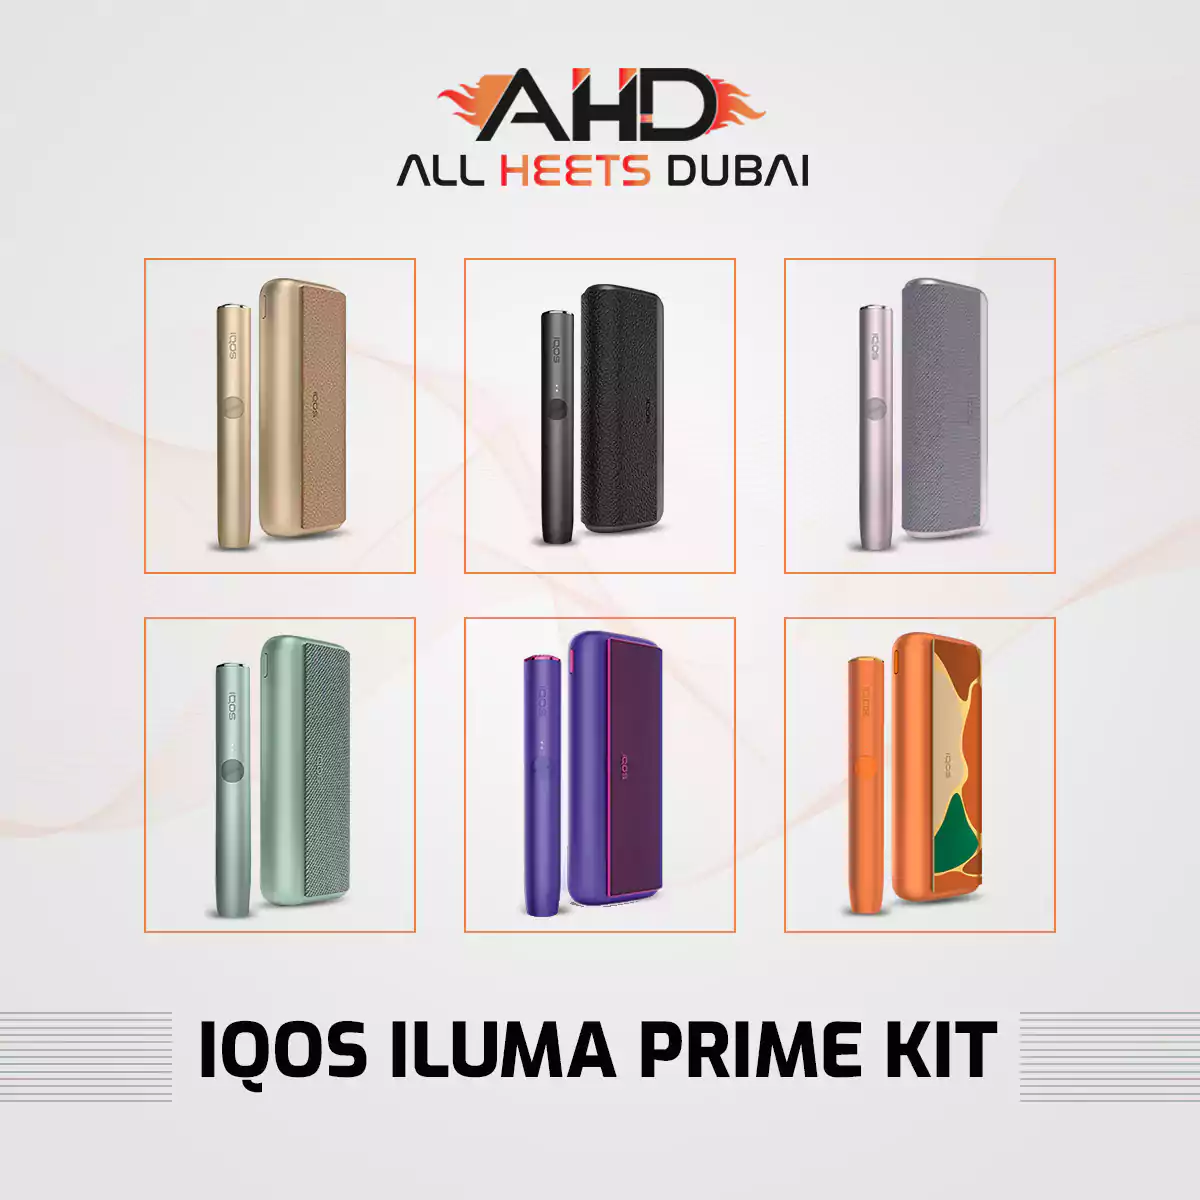 Comparing the IQOS Iluma and Iluma One Devices